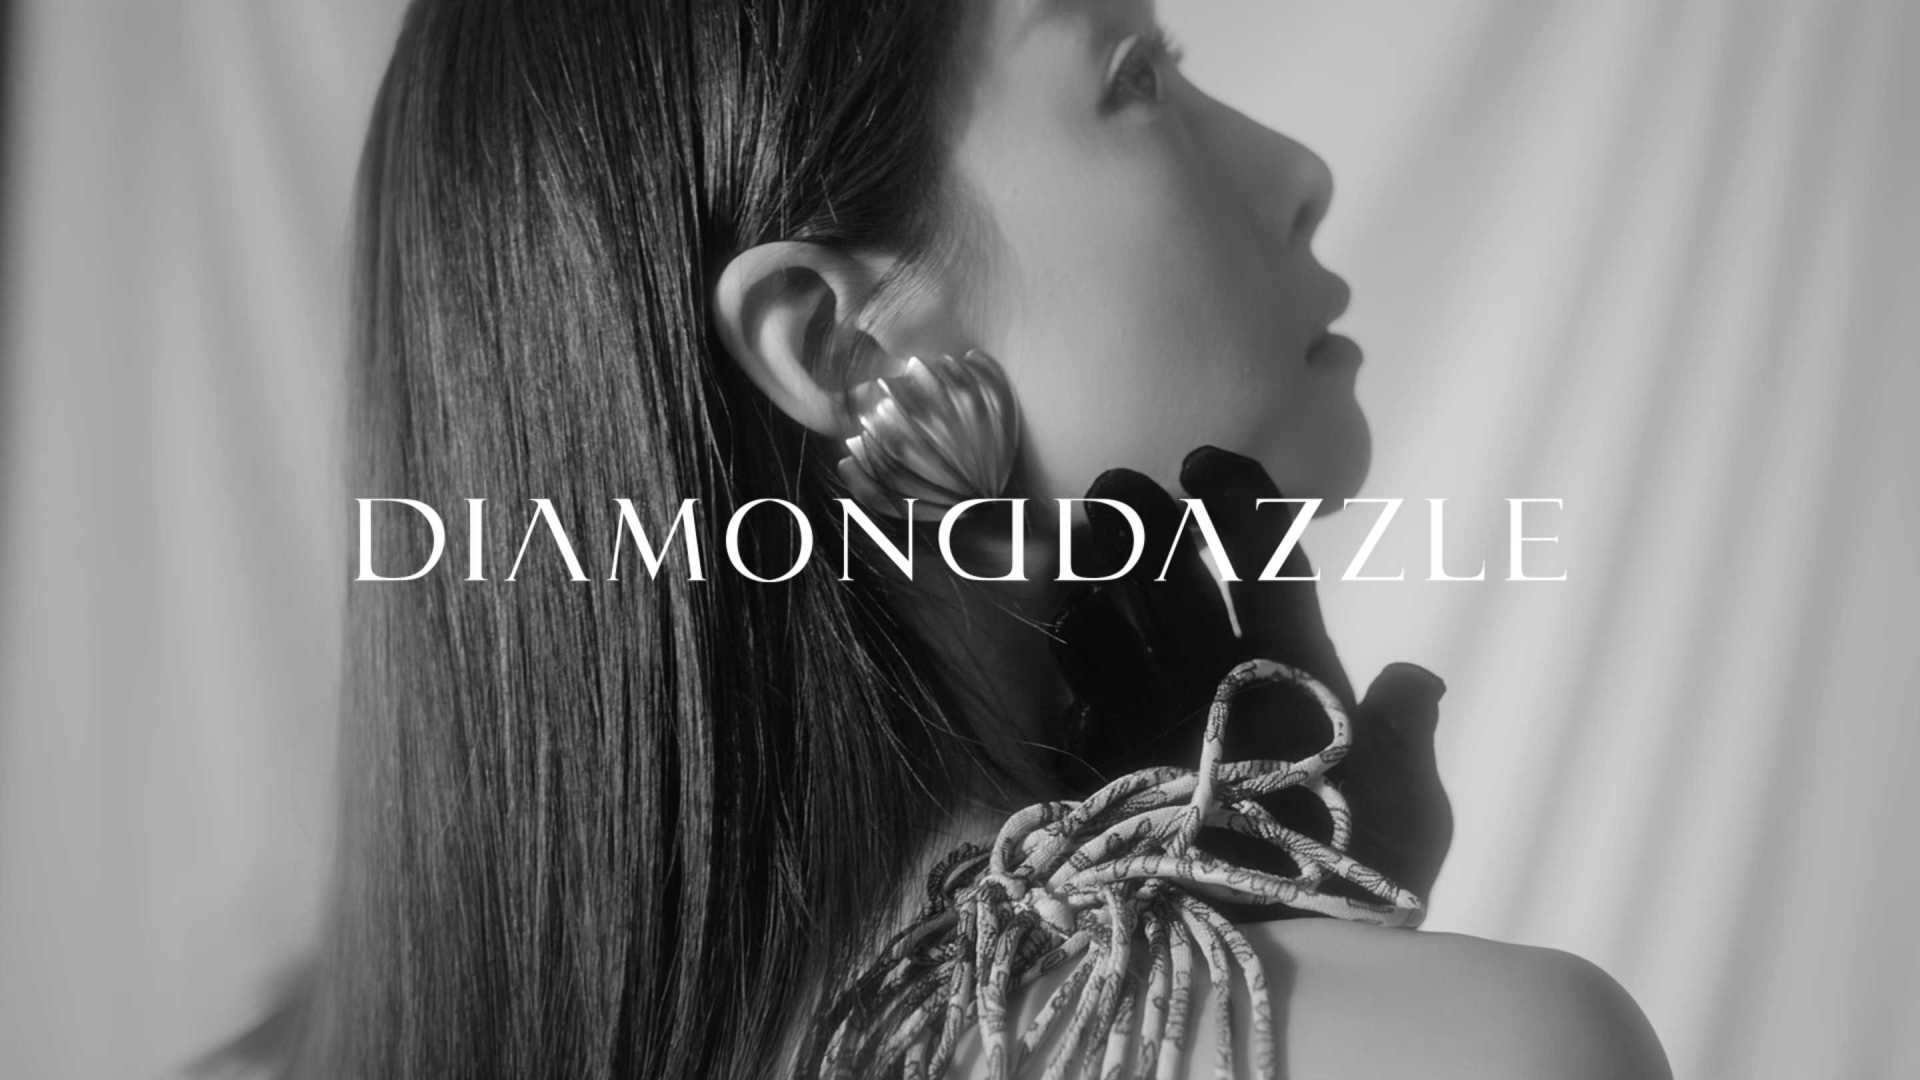 DiamondDazzle 21ss Summer x 宋茜